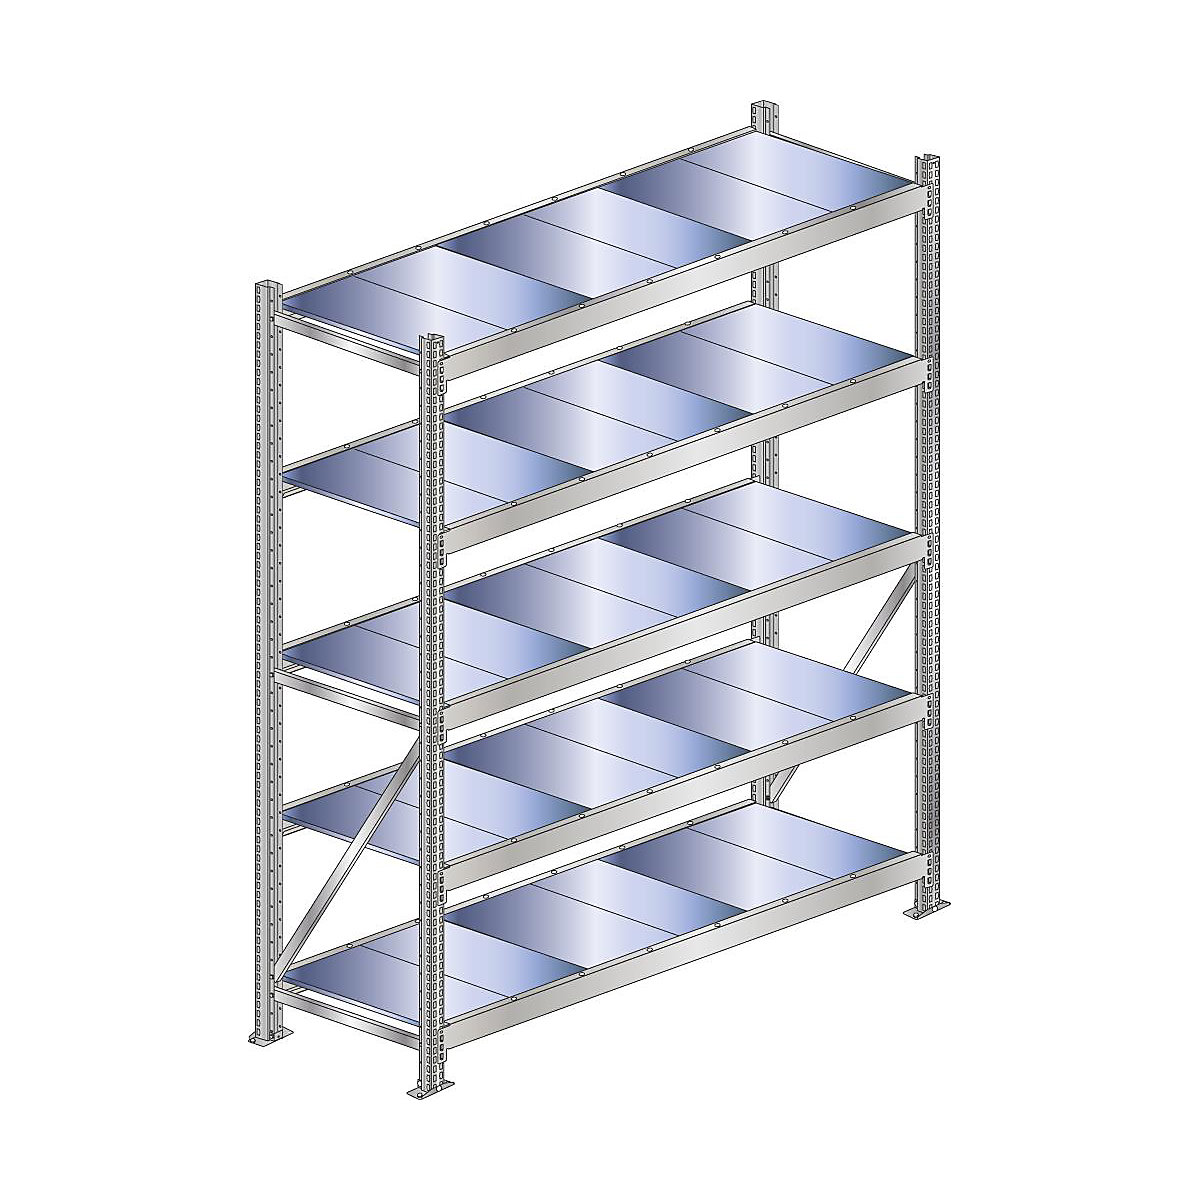 Wide span shelf unit, shelf load 500 kg – SCHULTE, shelf width 2500 mm, standard shelf unit, height 3000 mm, depth 500 mm